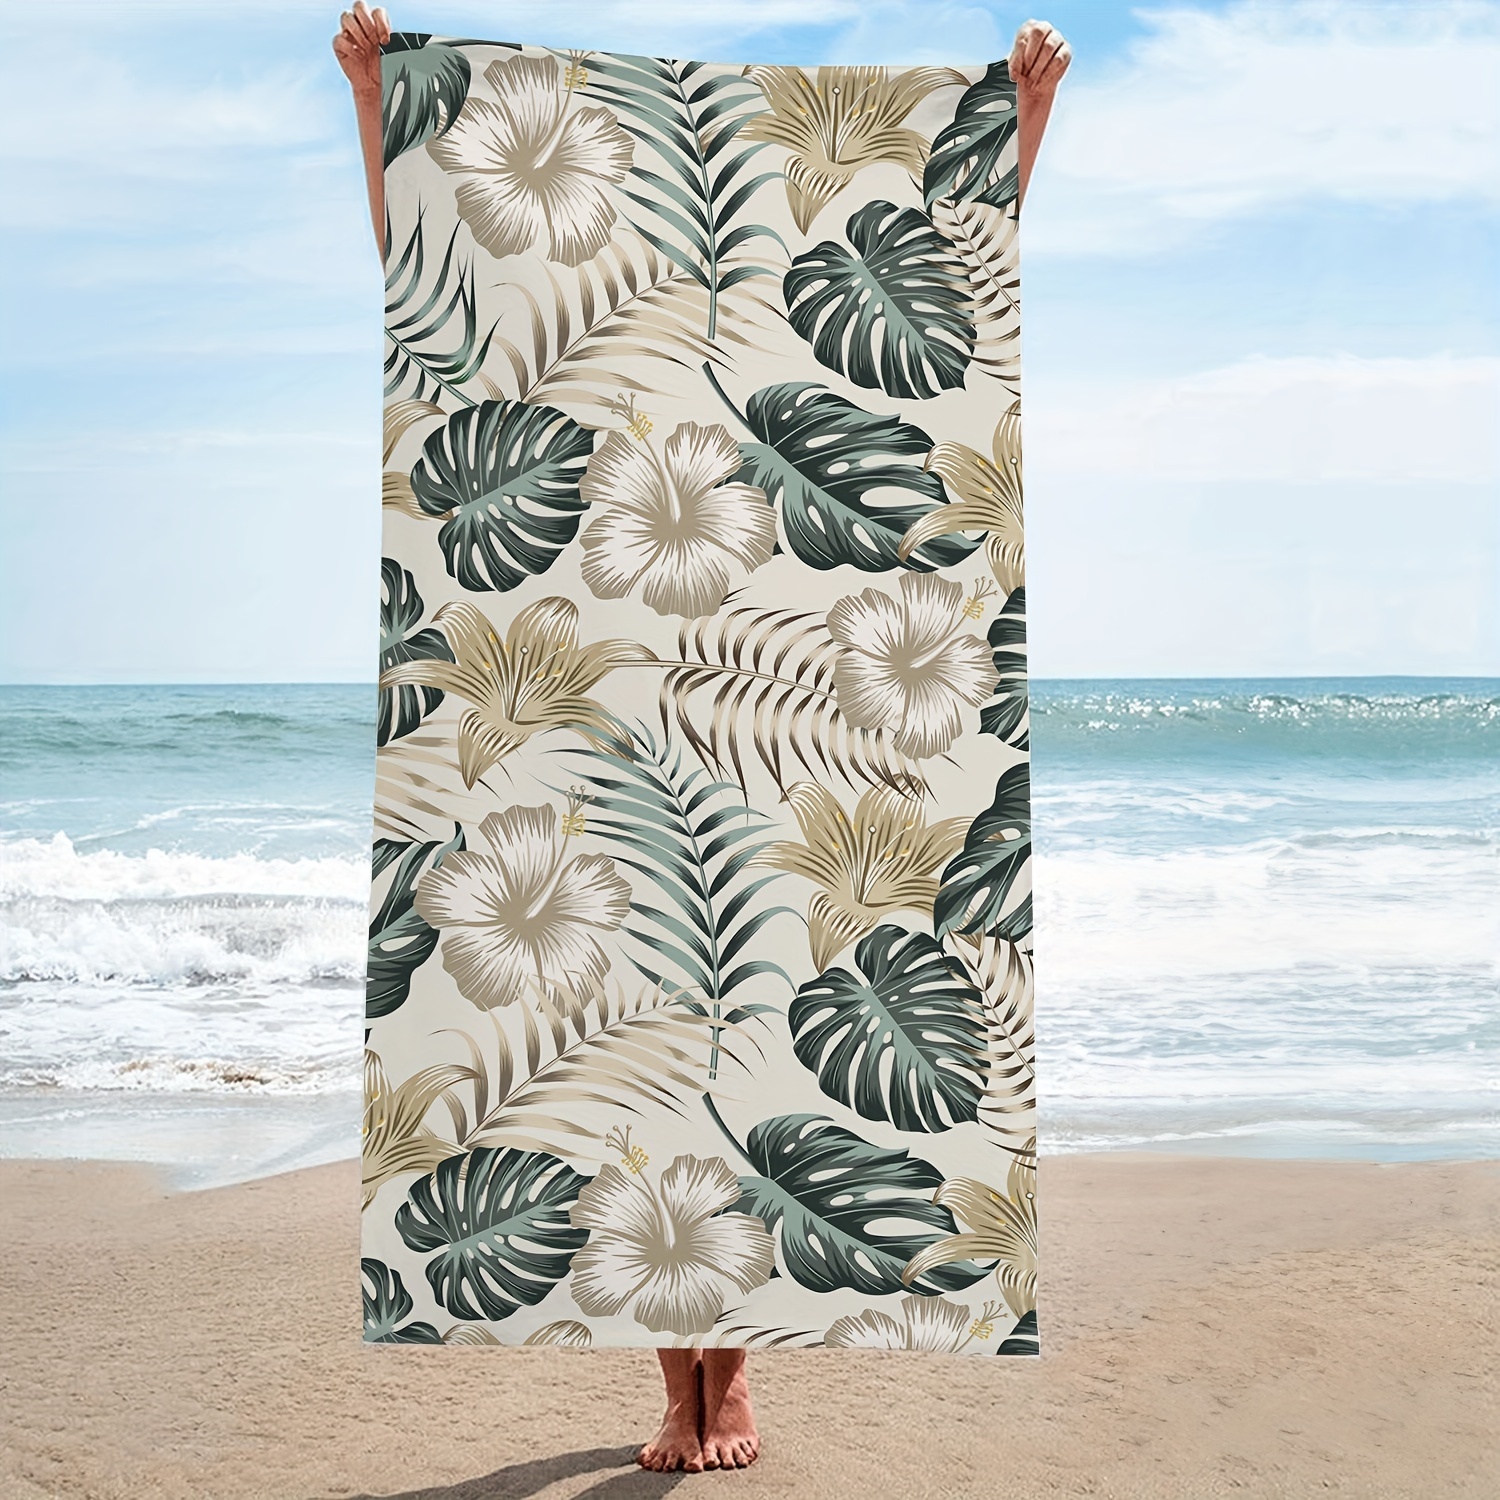 

1 serviette de plage en microfibre florale, serviette de bain surdimensionnée rétro tropicale, durable, séchage rapide, protection solaire, facile à nettoyer, serviette super absorbante